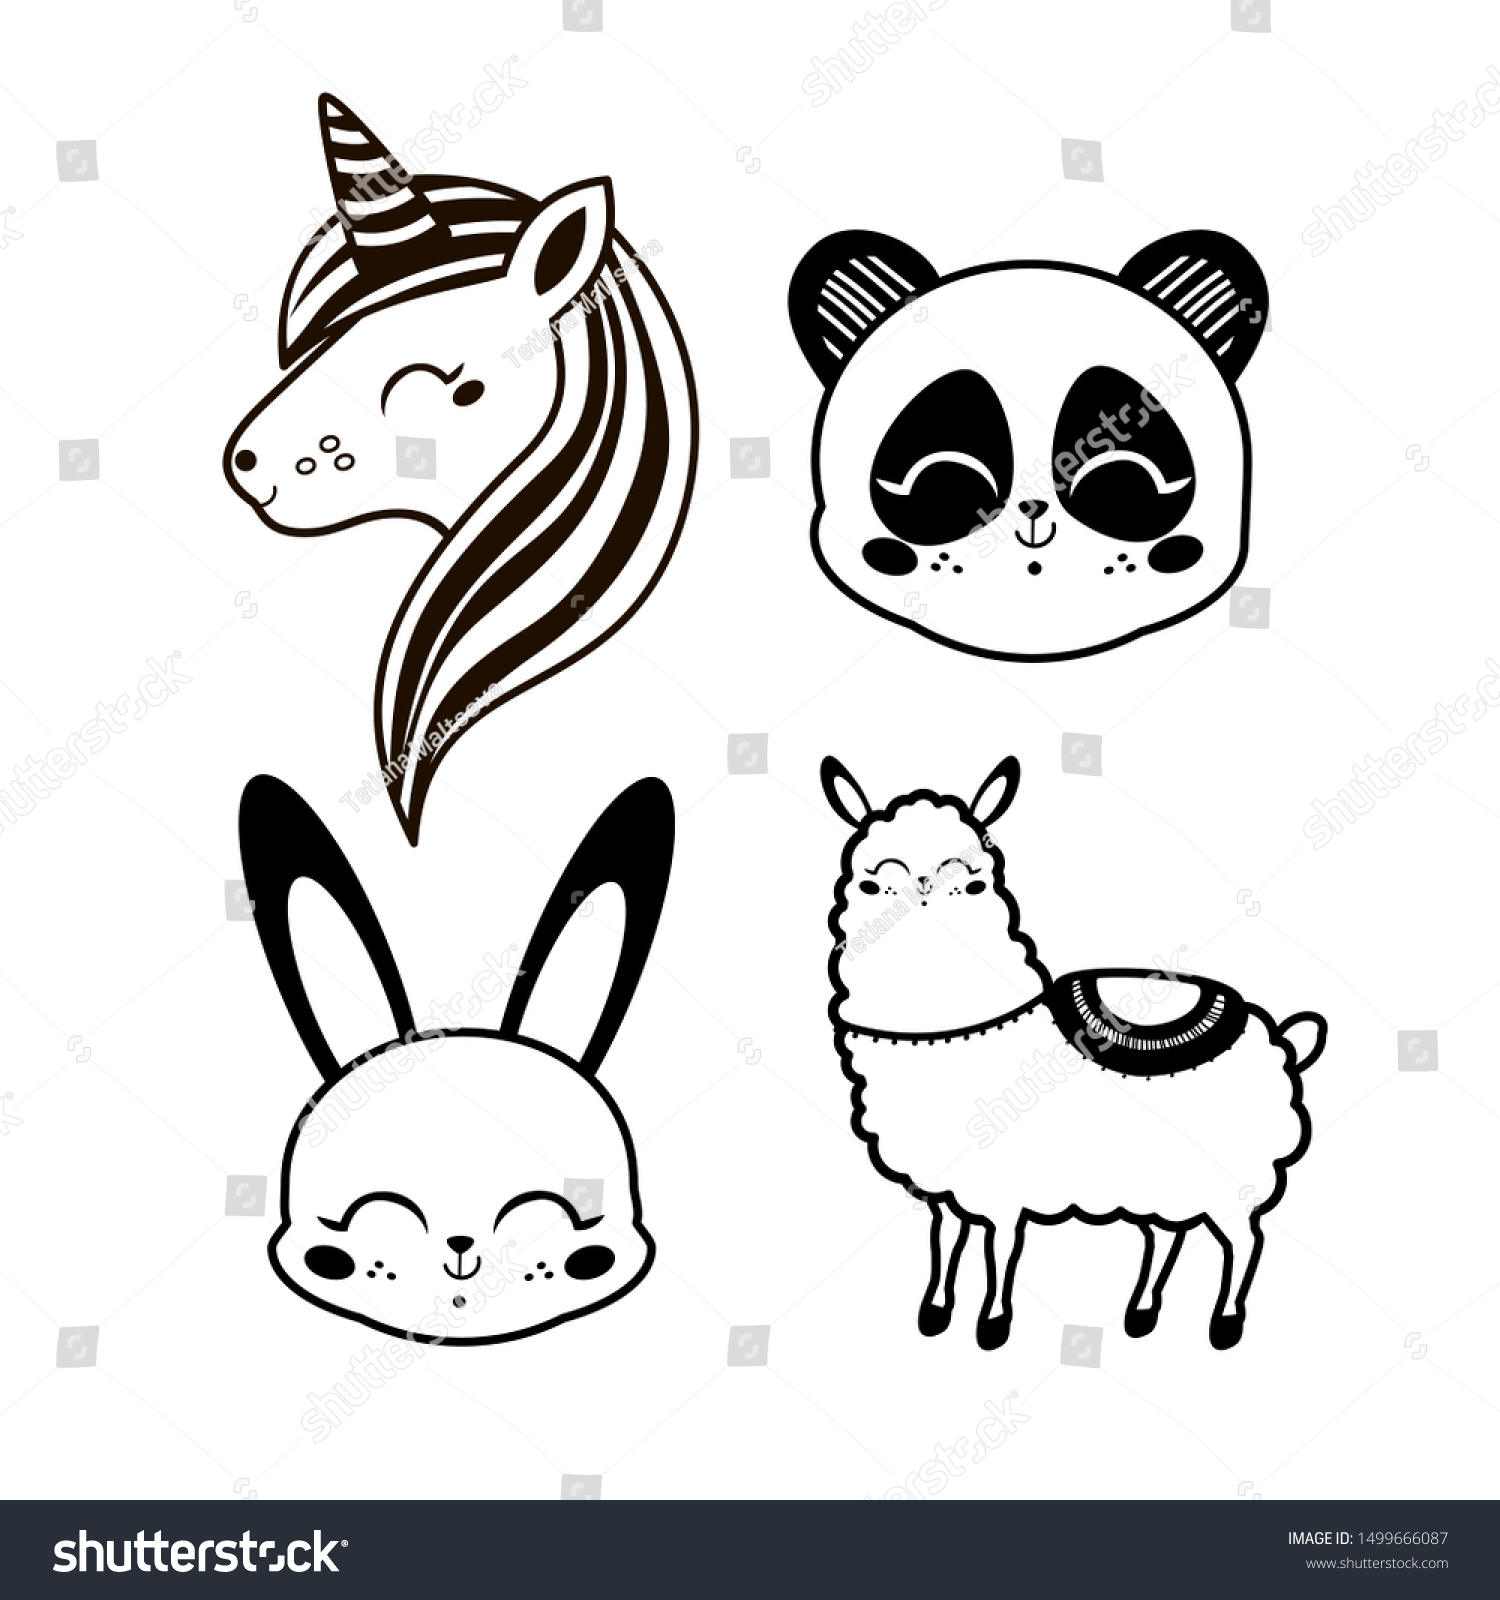 Lama unicorn panda rabbit cute vector stock vector royalty free